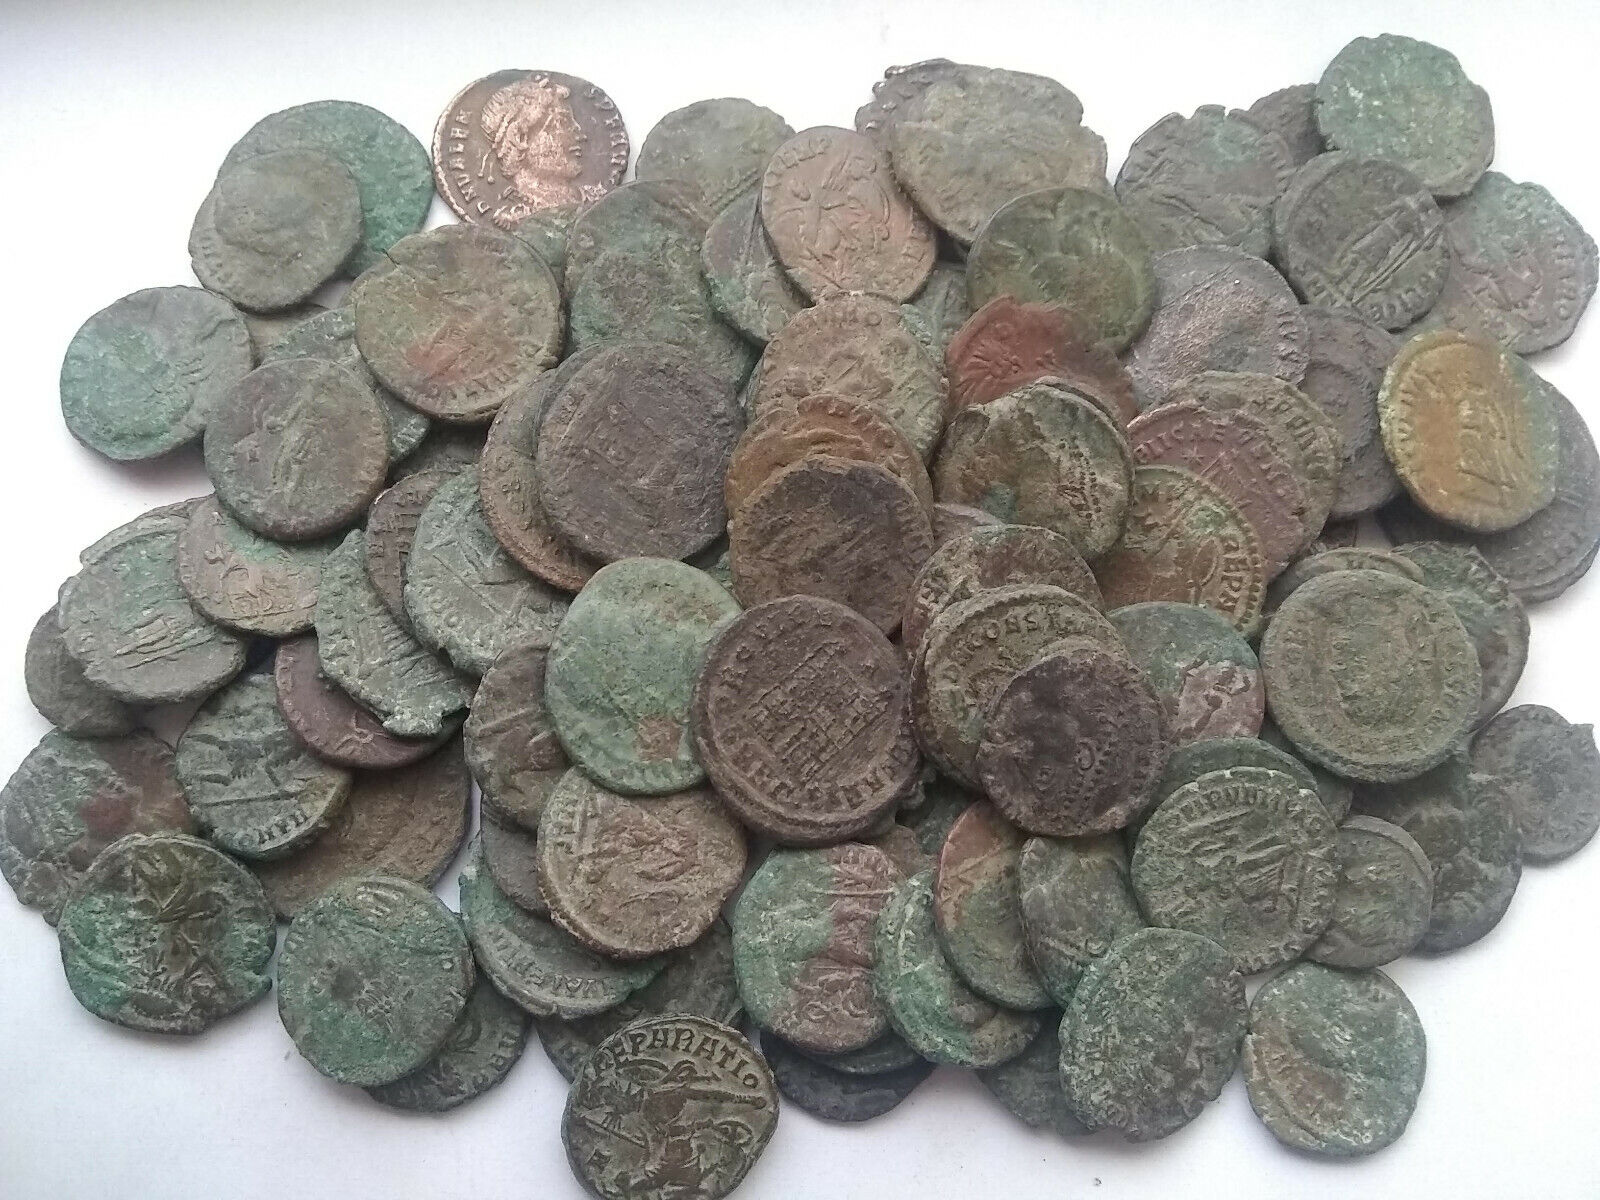 Lot of 2 original Ancient Roman imperial coins Constantine, Valens, Constantius Без бренда - фотография #2